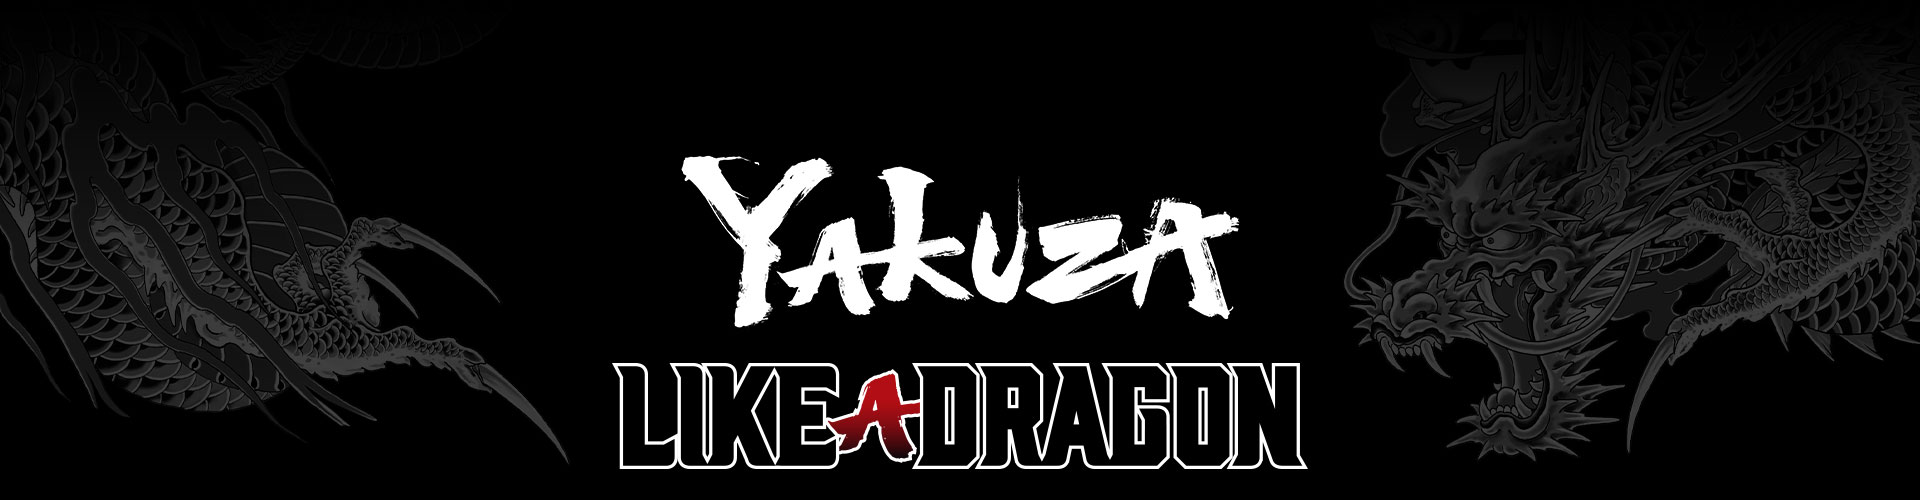 Yakuza Like a Dragon Franchise-Logo mit einem stilisierten grauen Drachentattoo-Hintergrund.